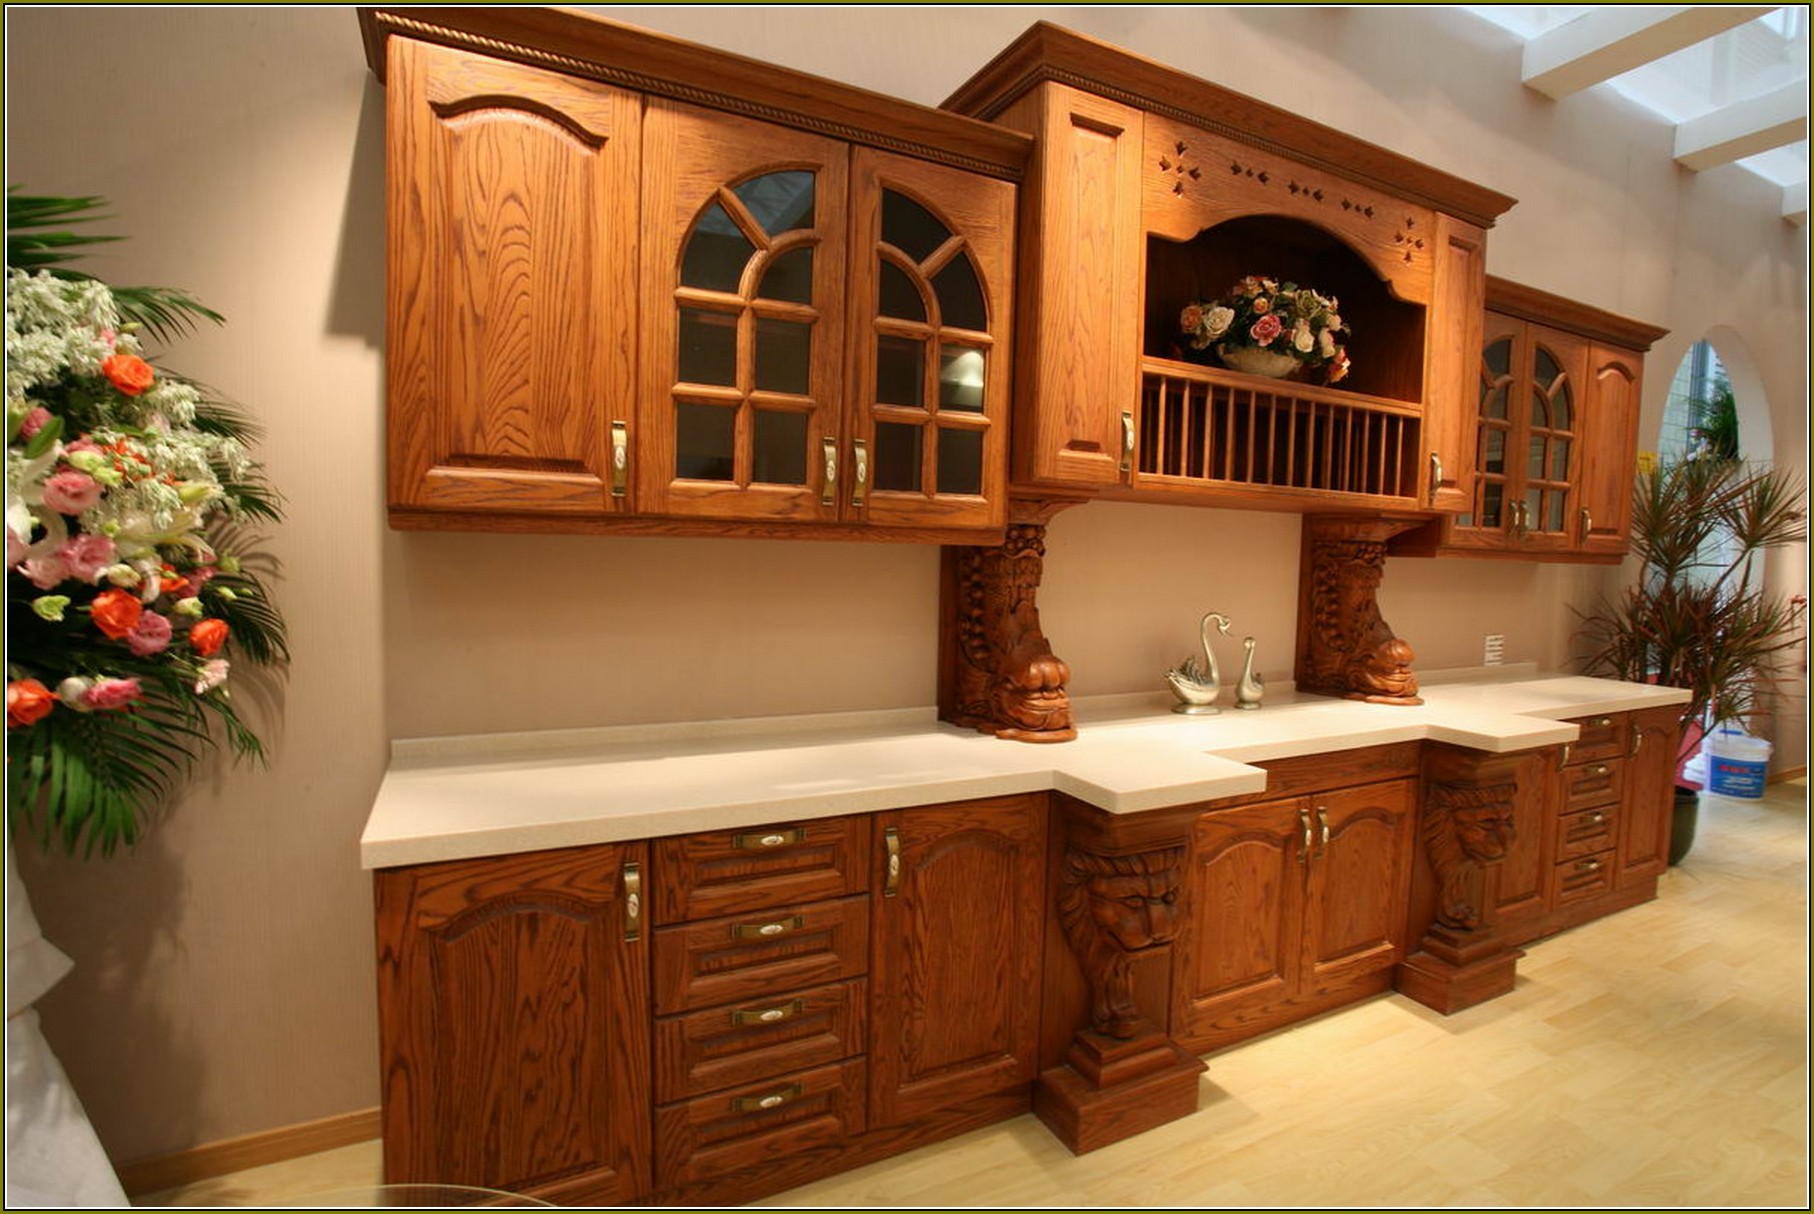 Honey Oak Cabinets Wall Color